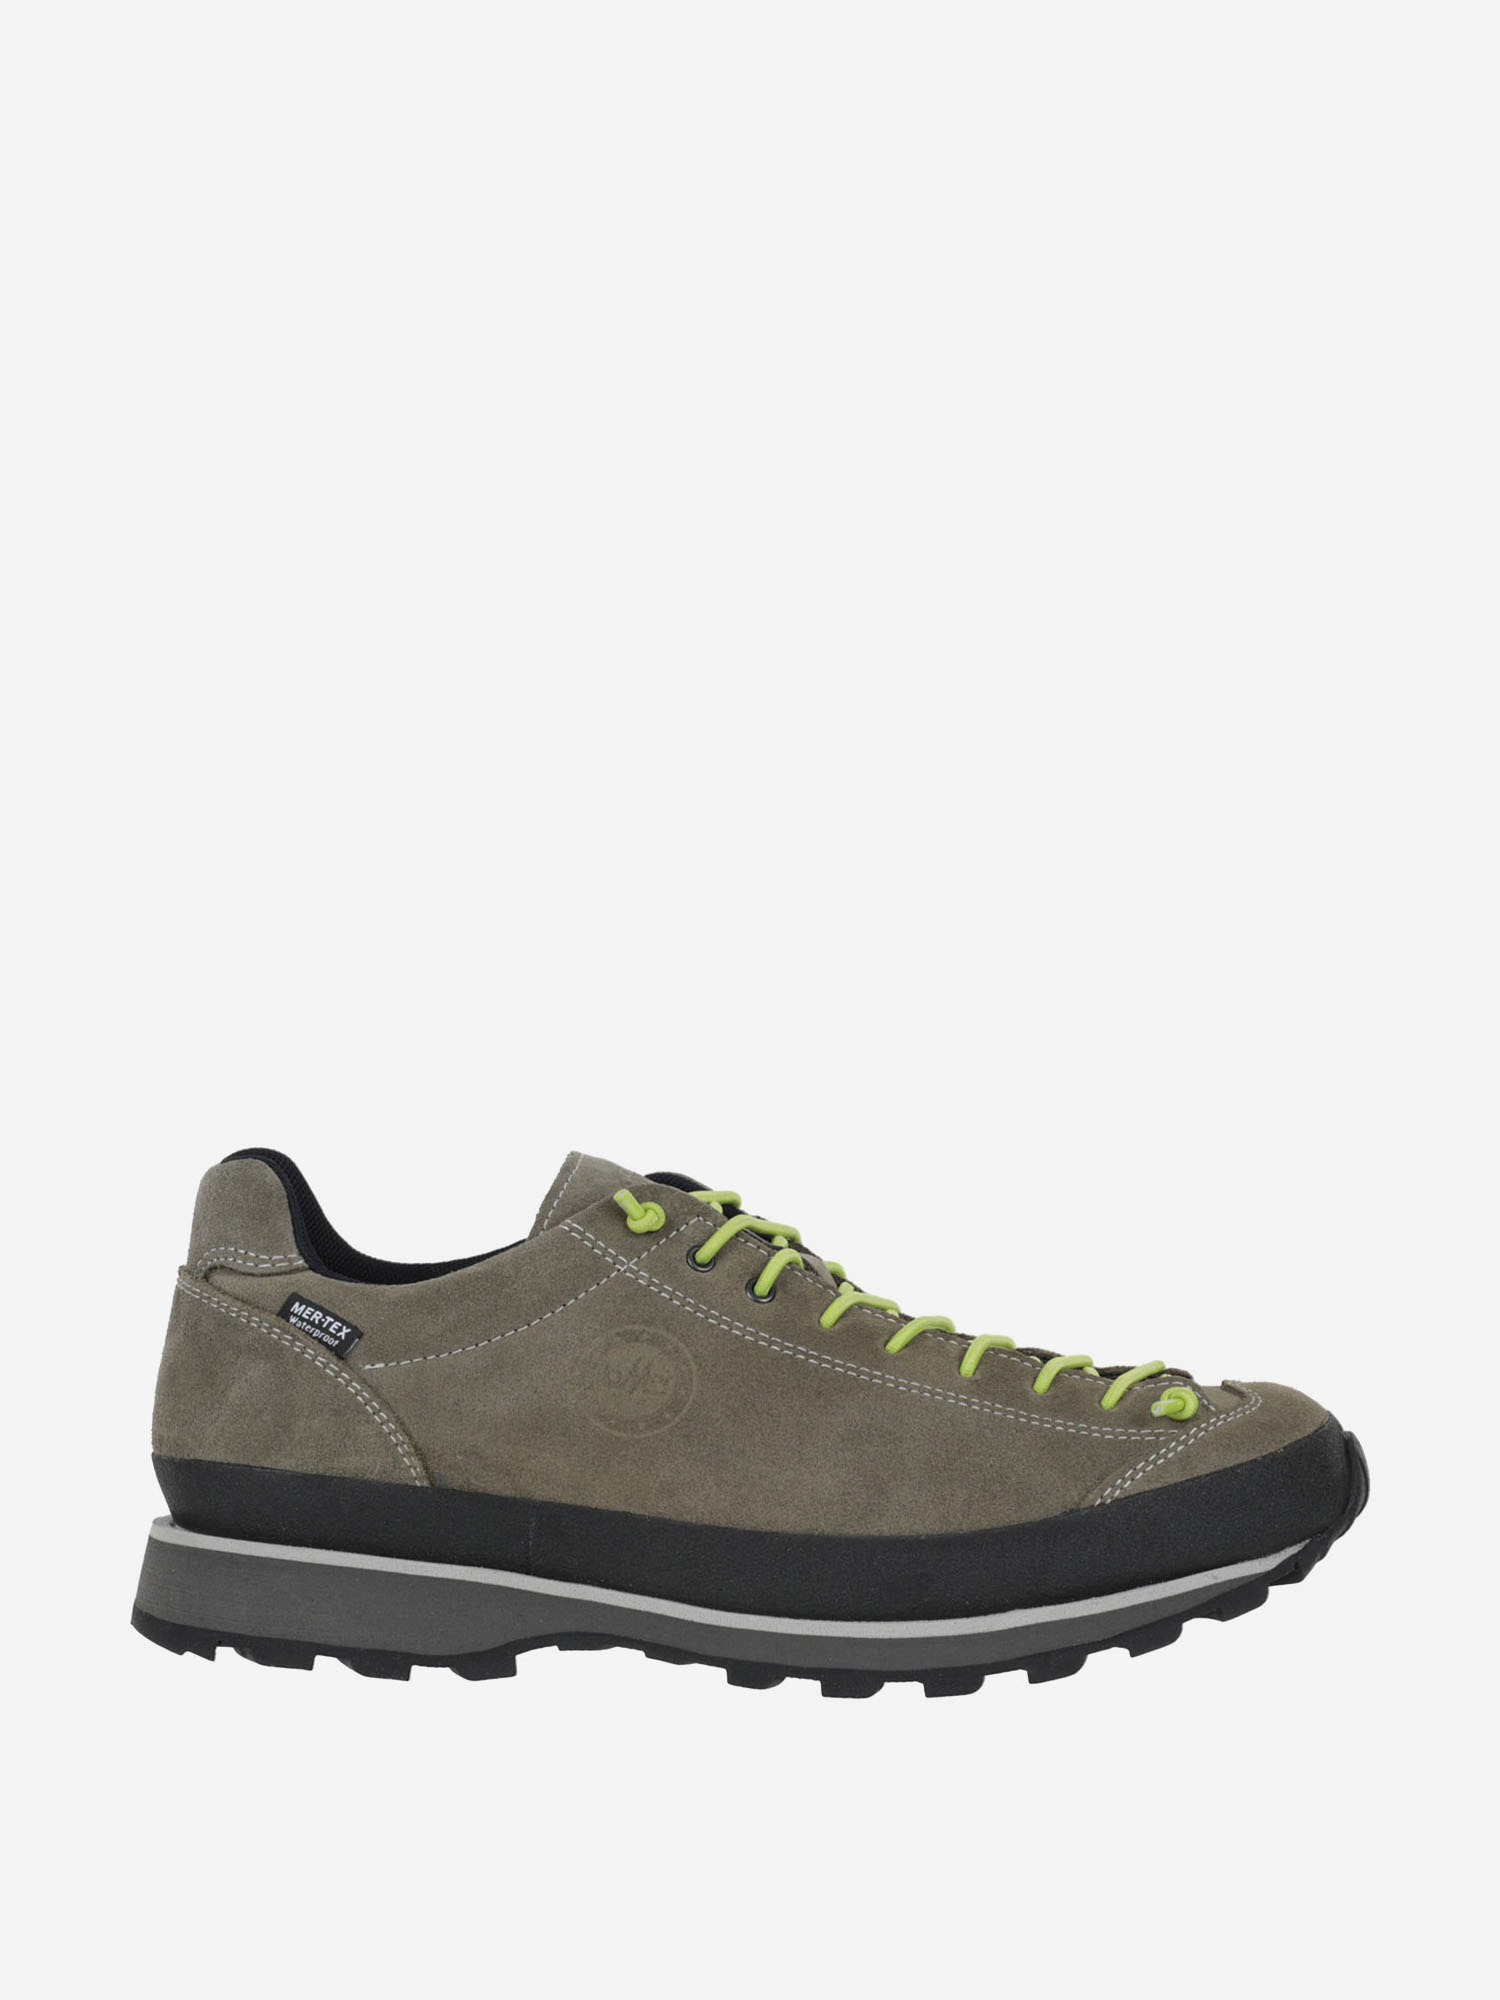 Ботинки Lomer Bio Naturale Suede MTX Truffle/Lime, Серый